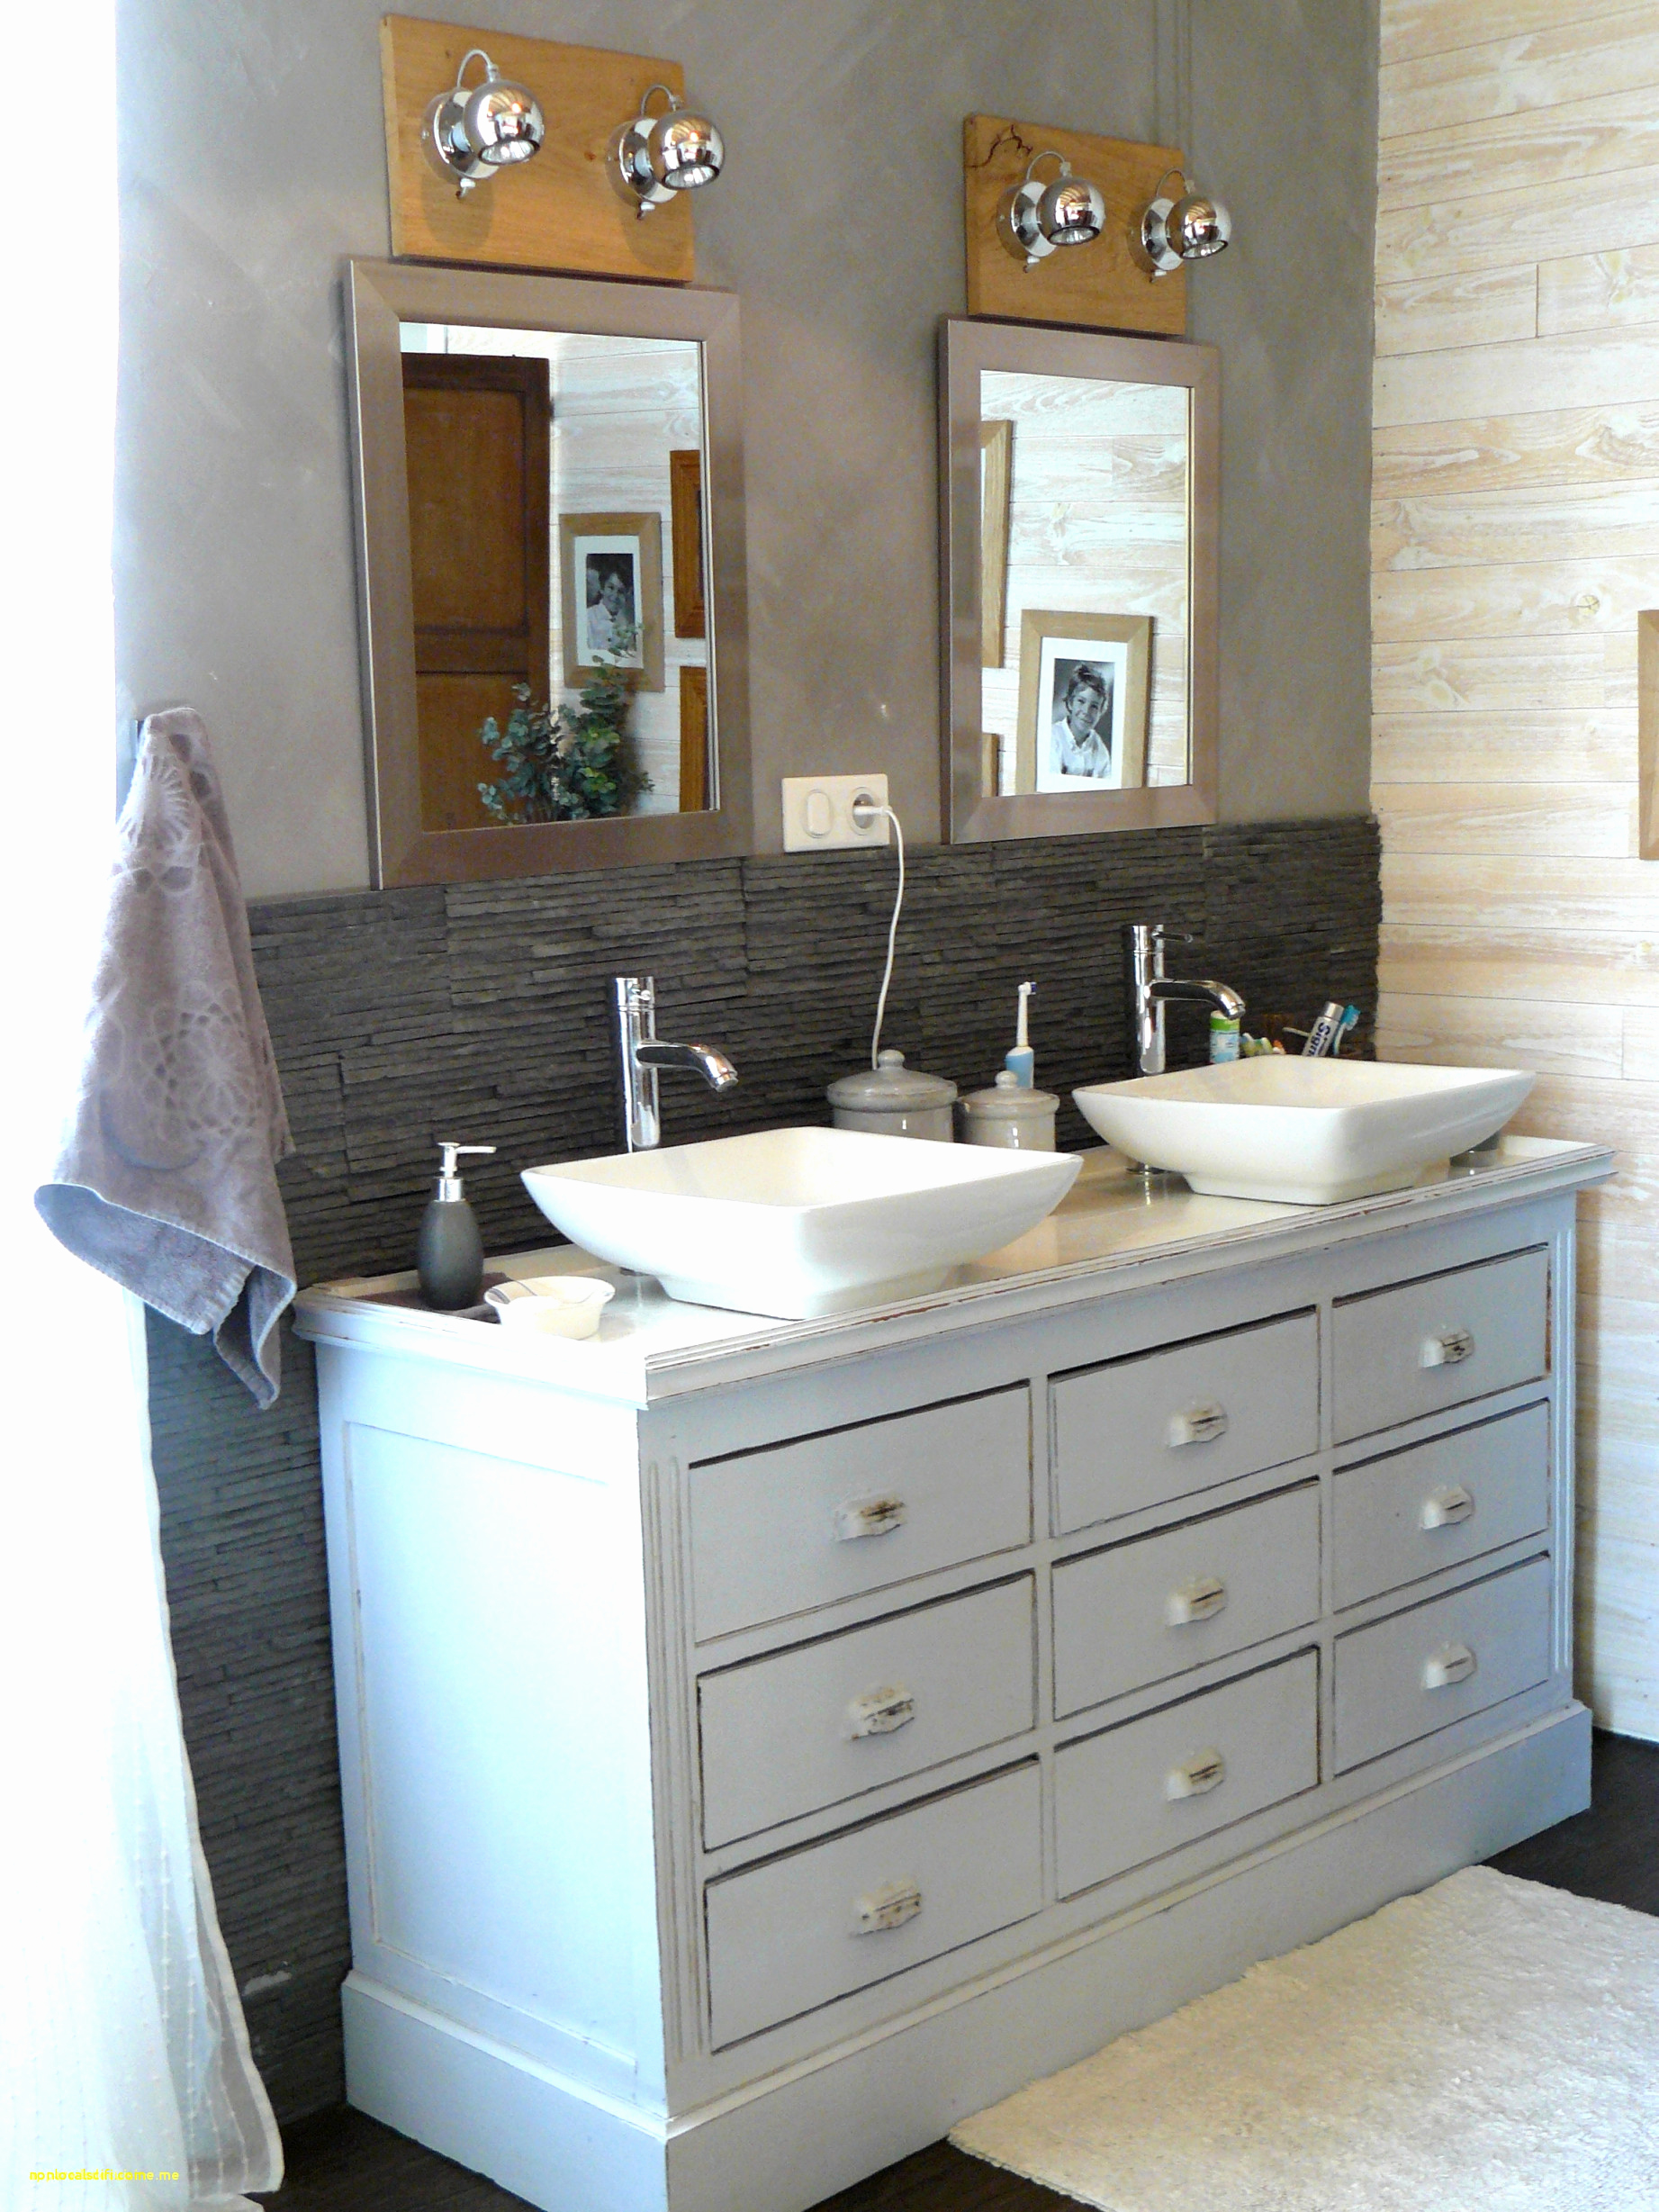 authentique photos de meubles de salle de bain design genial 35 inspirant vasque posee of authentique photos de meubles de salle de bain design